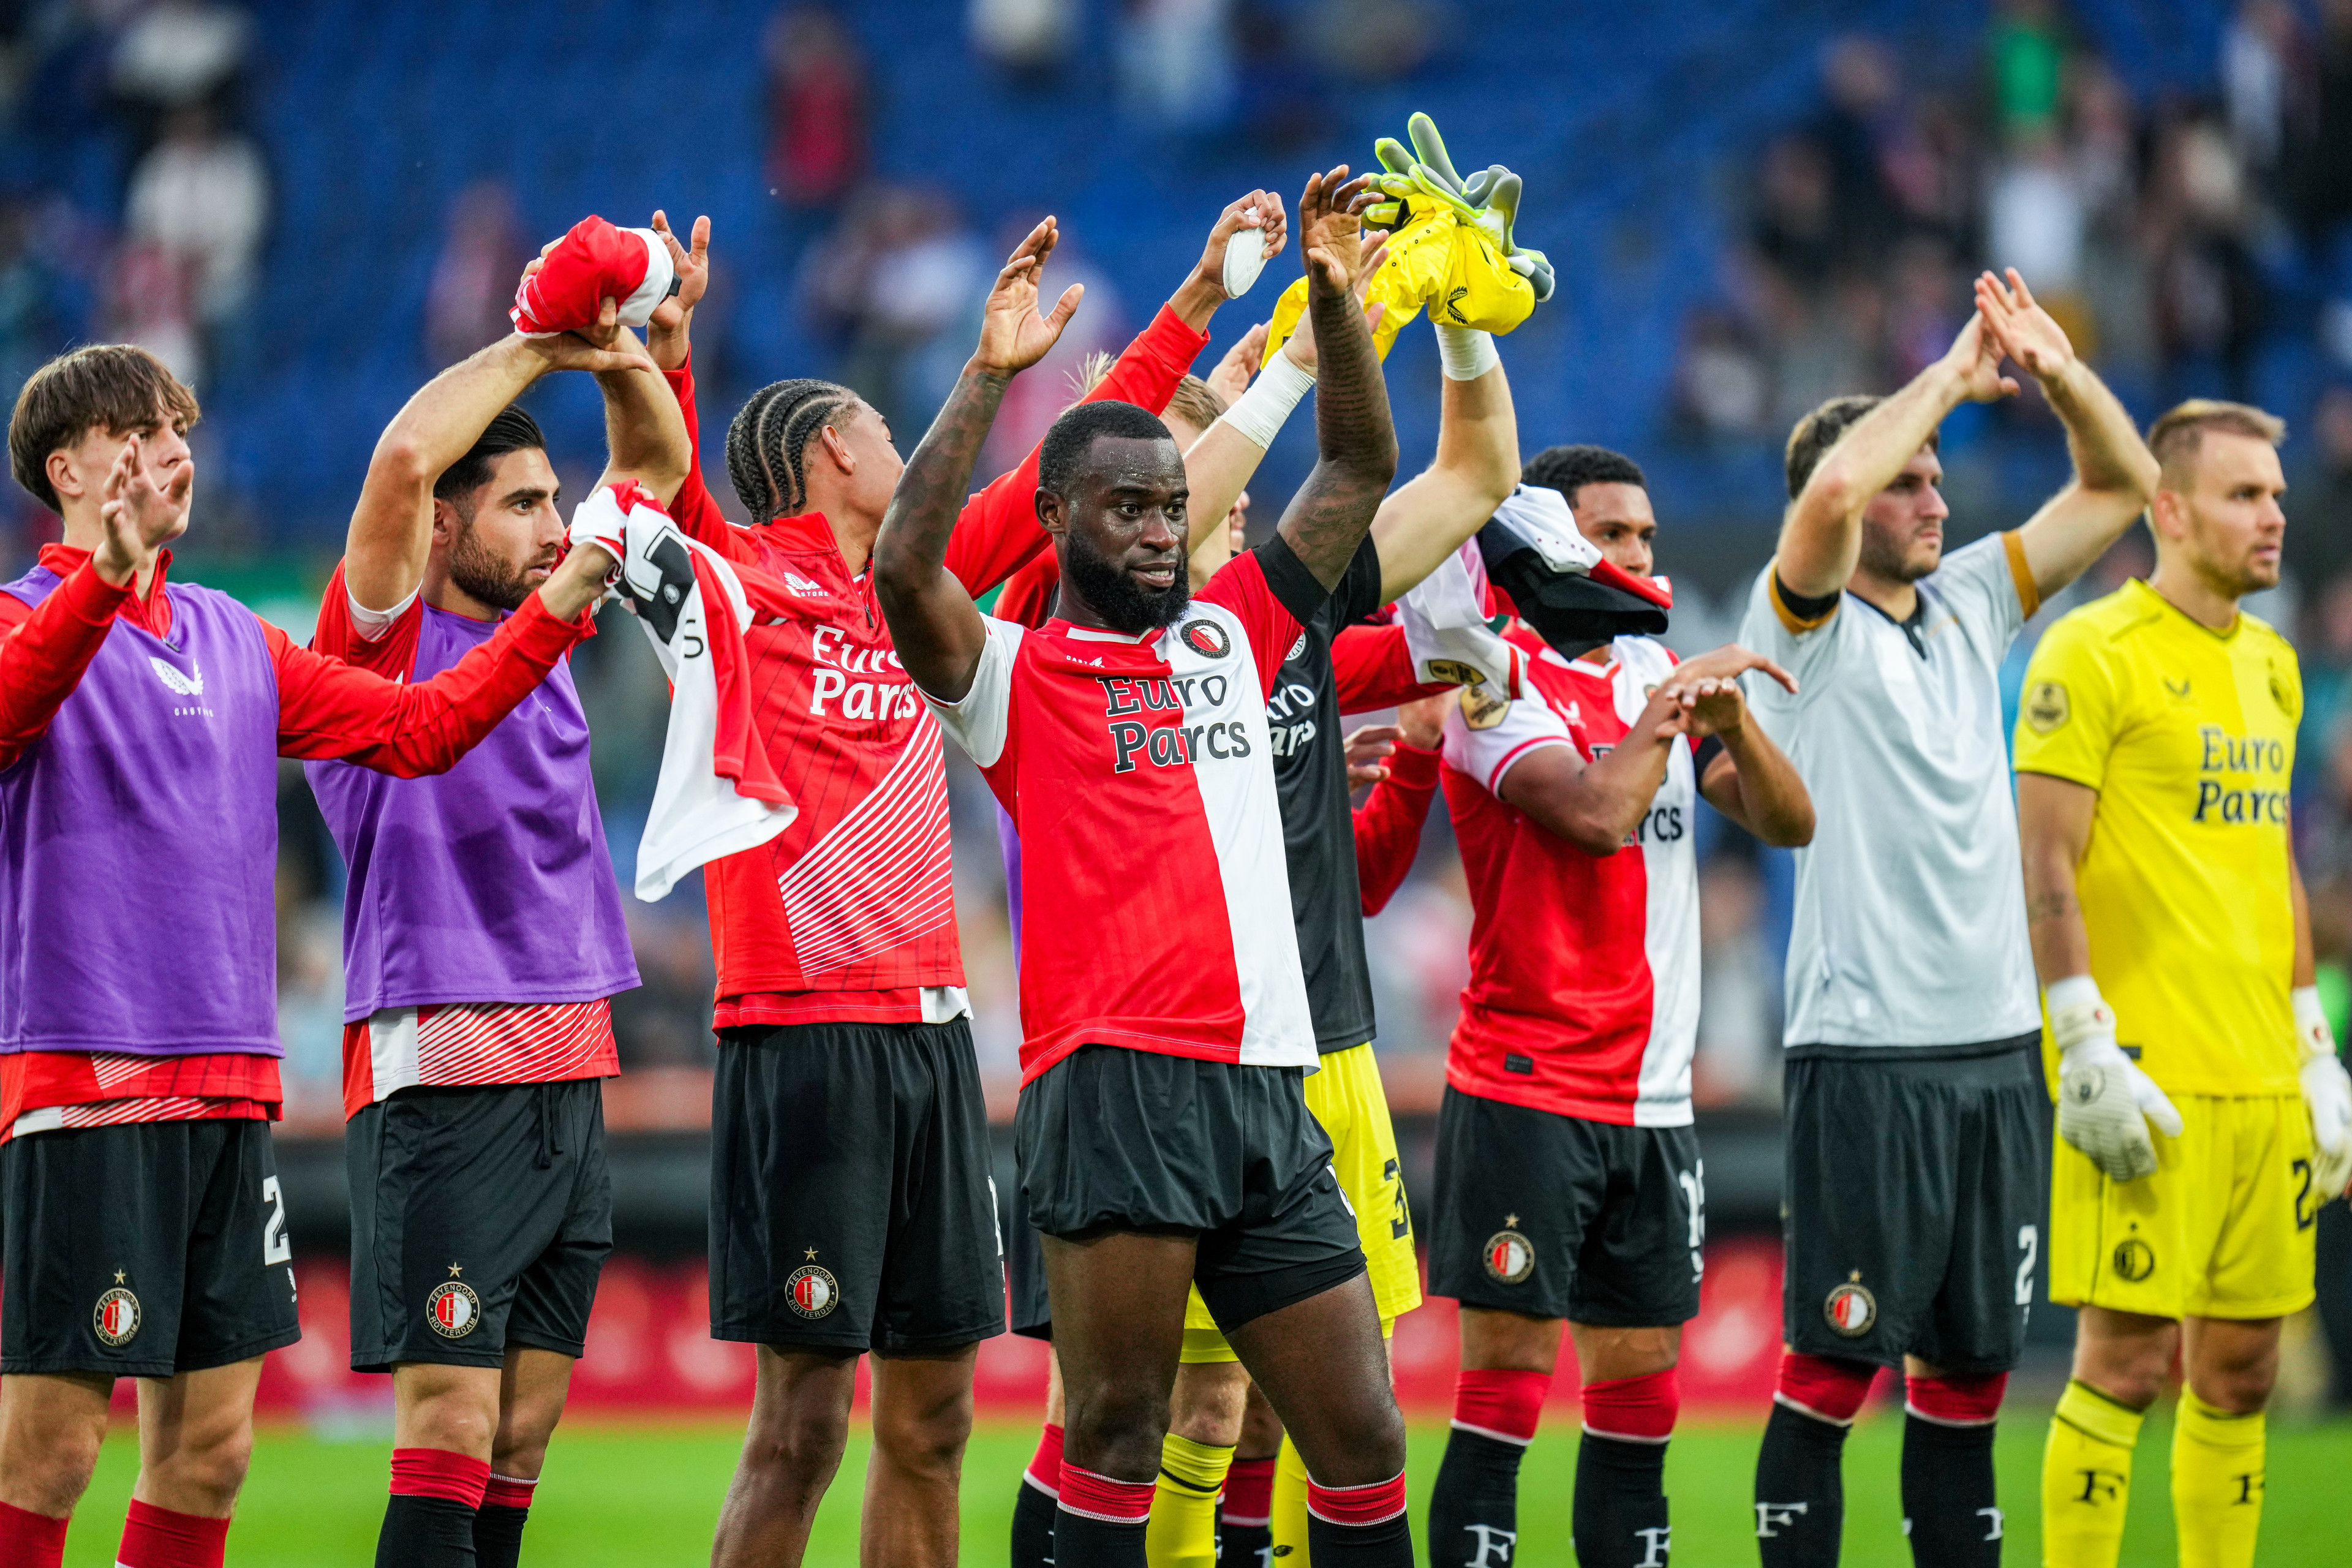 Beoordeel de spelers voor de wedstrijd Feyenoord - Go Ahead Eagles